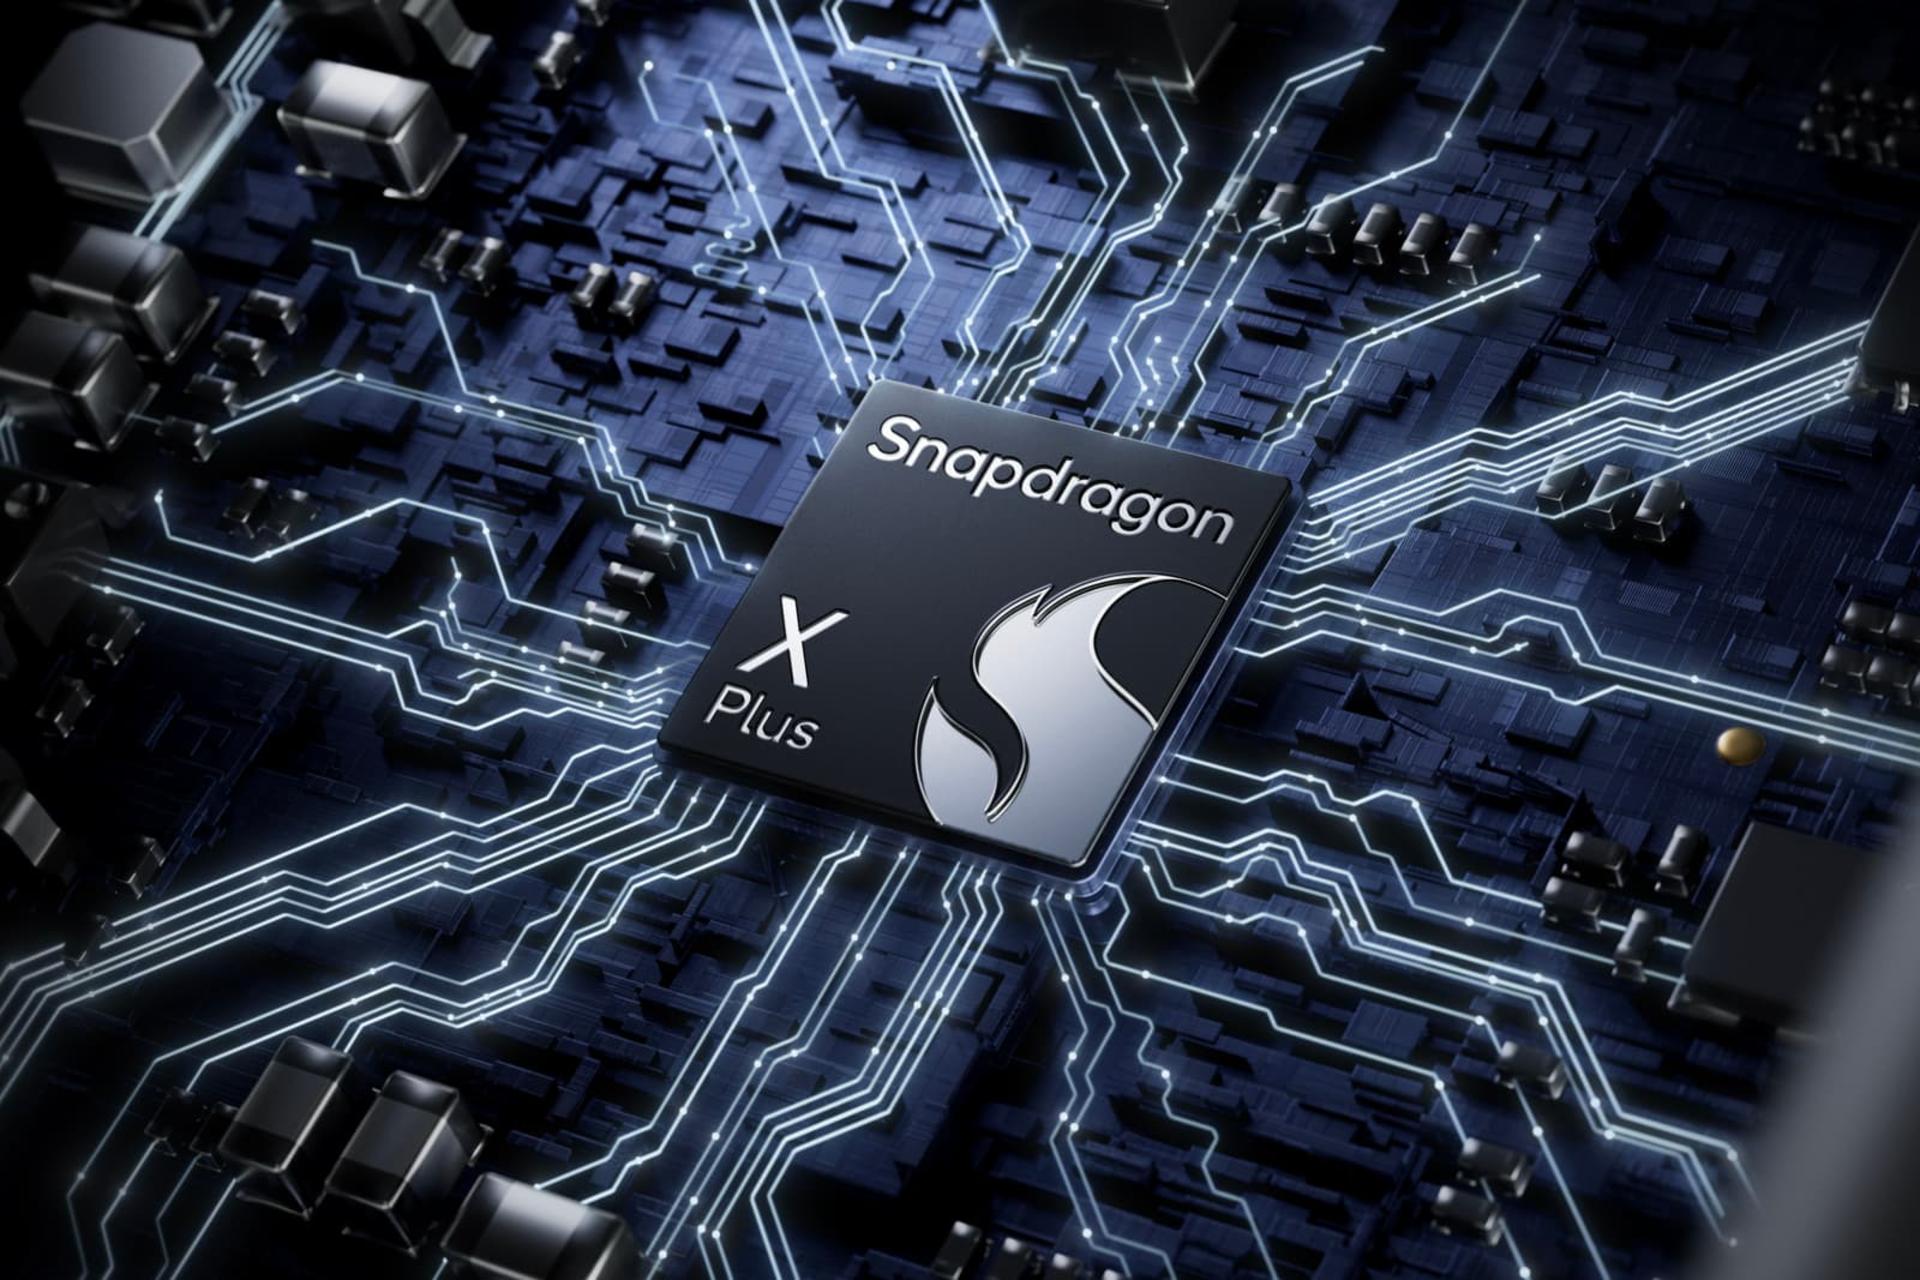 پردازنده اسنپدراگون ایکس پلاس / Snapdragon X Plus روی مادربرد